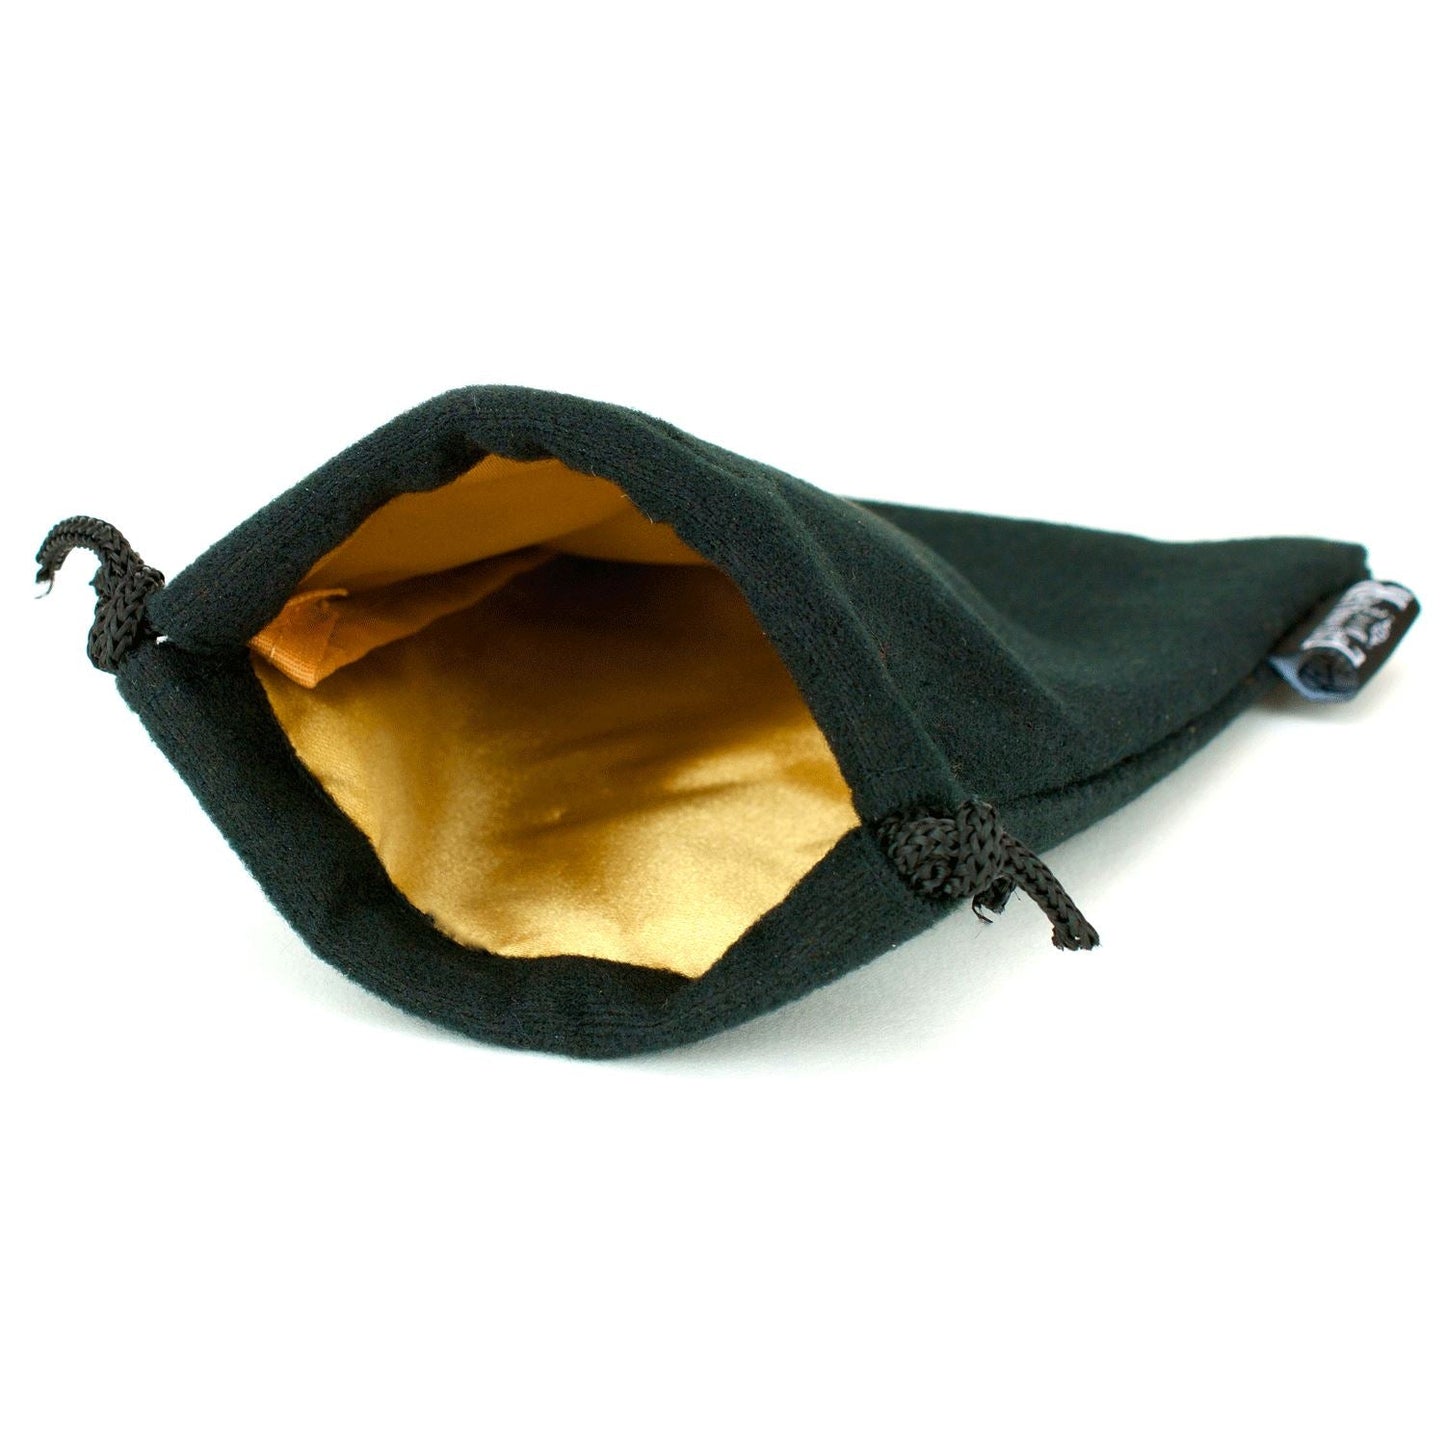 Bolsa de dados de terciopelo negro con interior satinado de 5x8 pulgadas - Múltiples colores disponibles